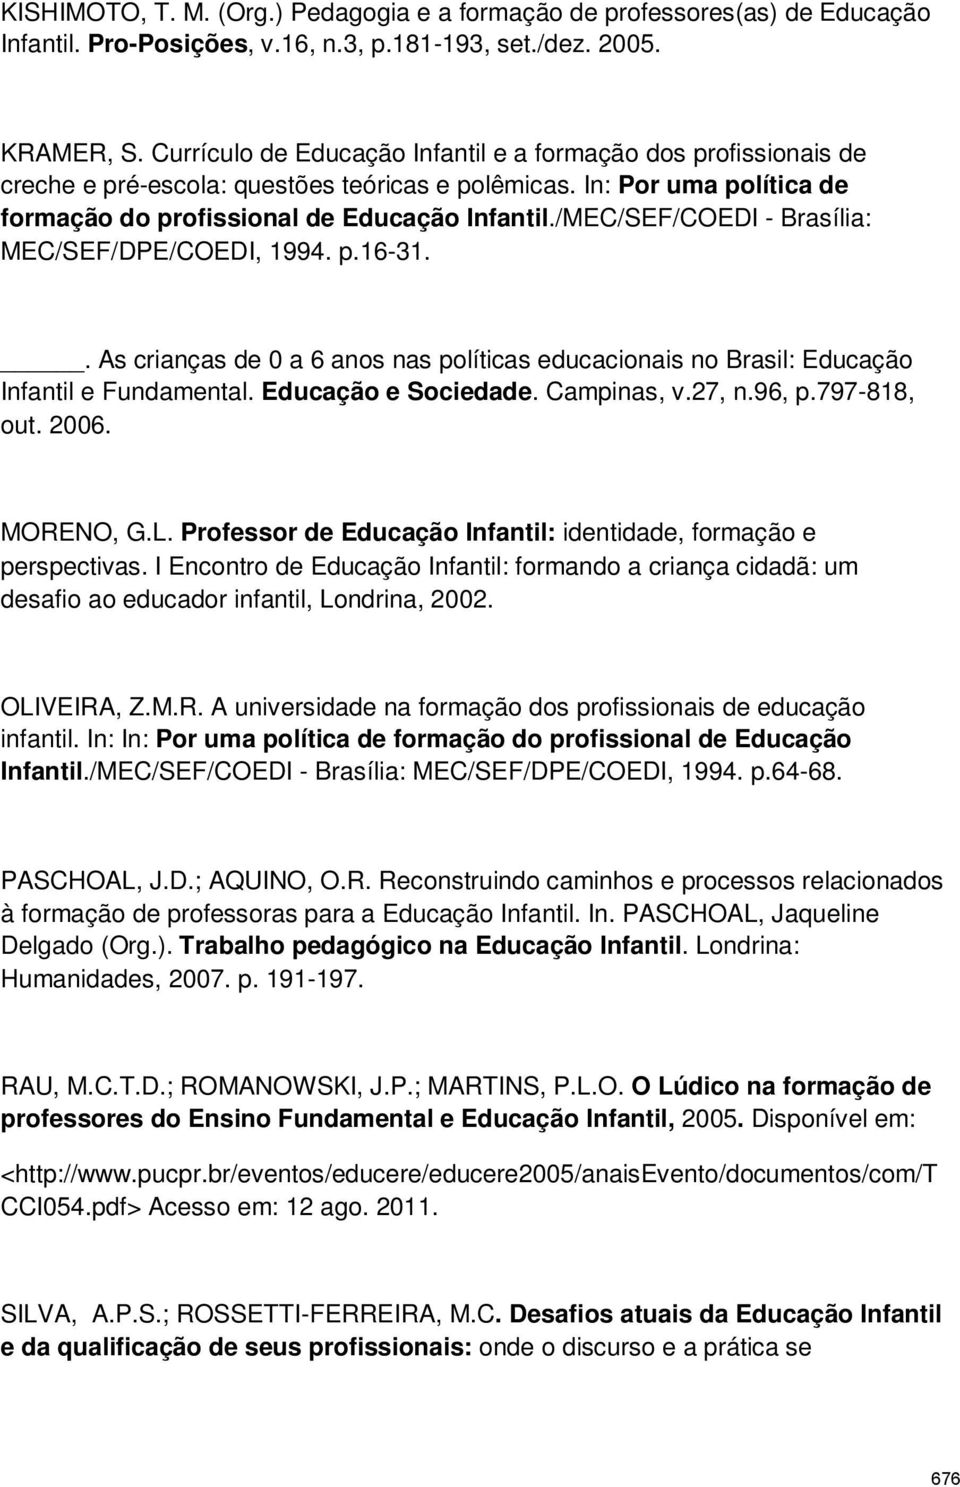 /MEC/SEF/COEDI - Brasília: MEC/SEF/DPE/COEDI, 1994. p.16-31.. As crianças de 0 a 6 anos nas políticas educacionais no Brasil: Educação Infantil e Fundamental. Educação e Sociedade. Campinas, v.27, n.